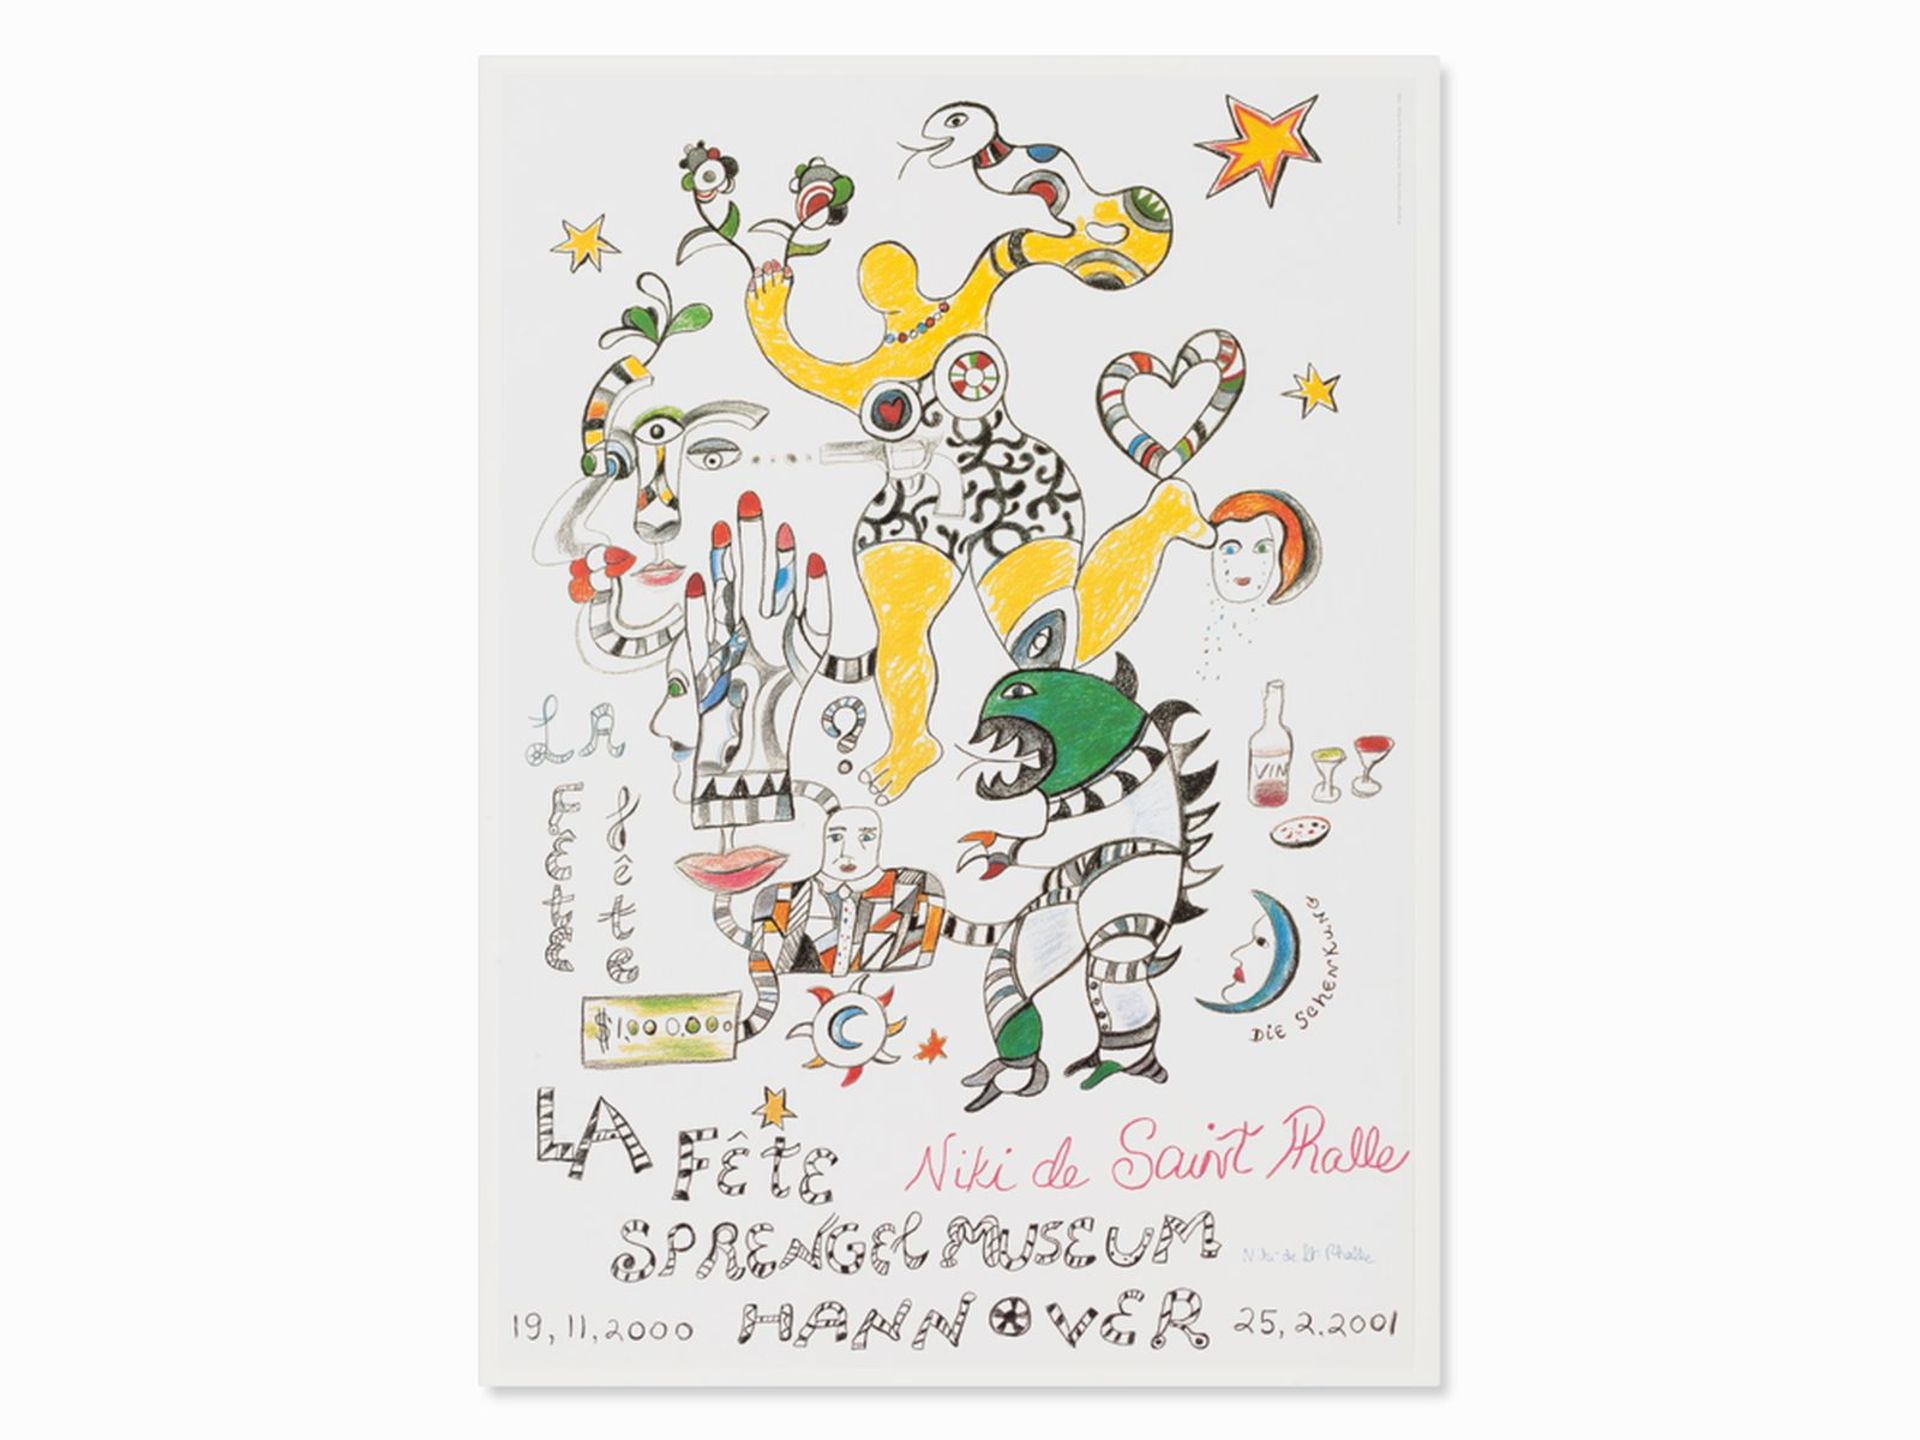 Niki de Saint Phalle, poster "La Fete. The donation " - Image 2 of 9